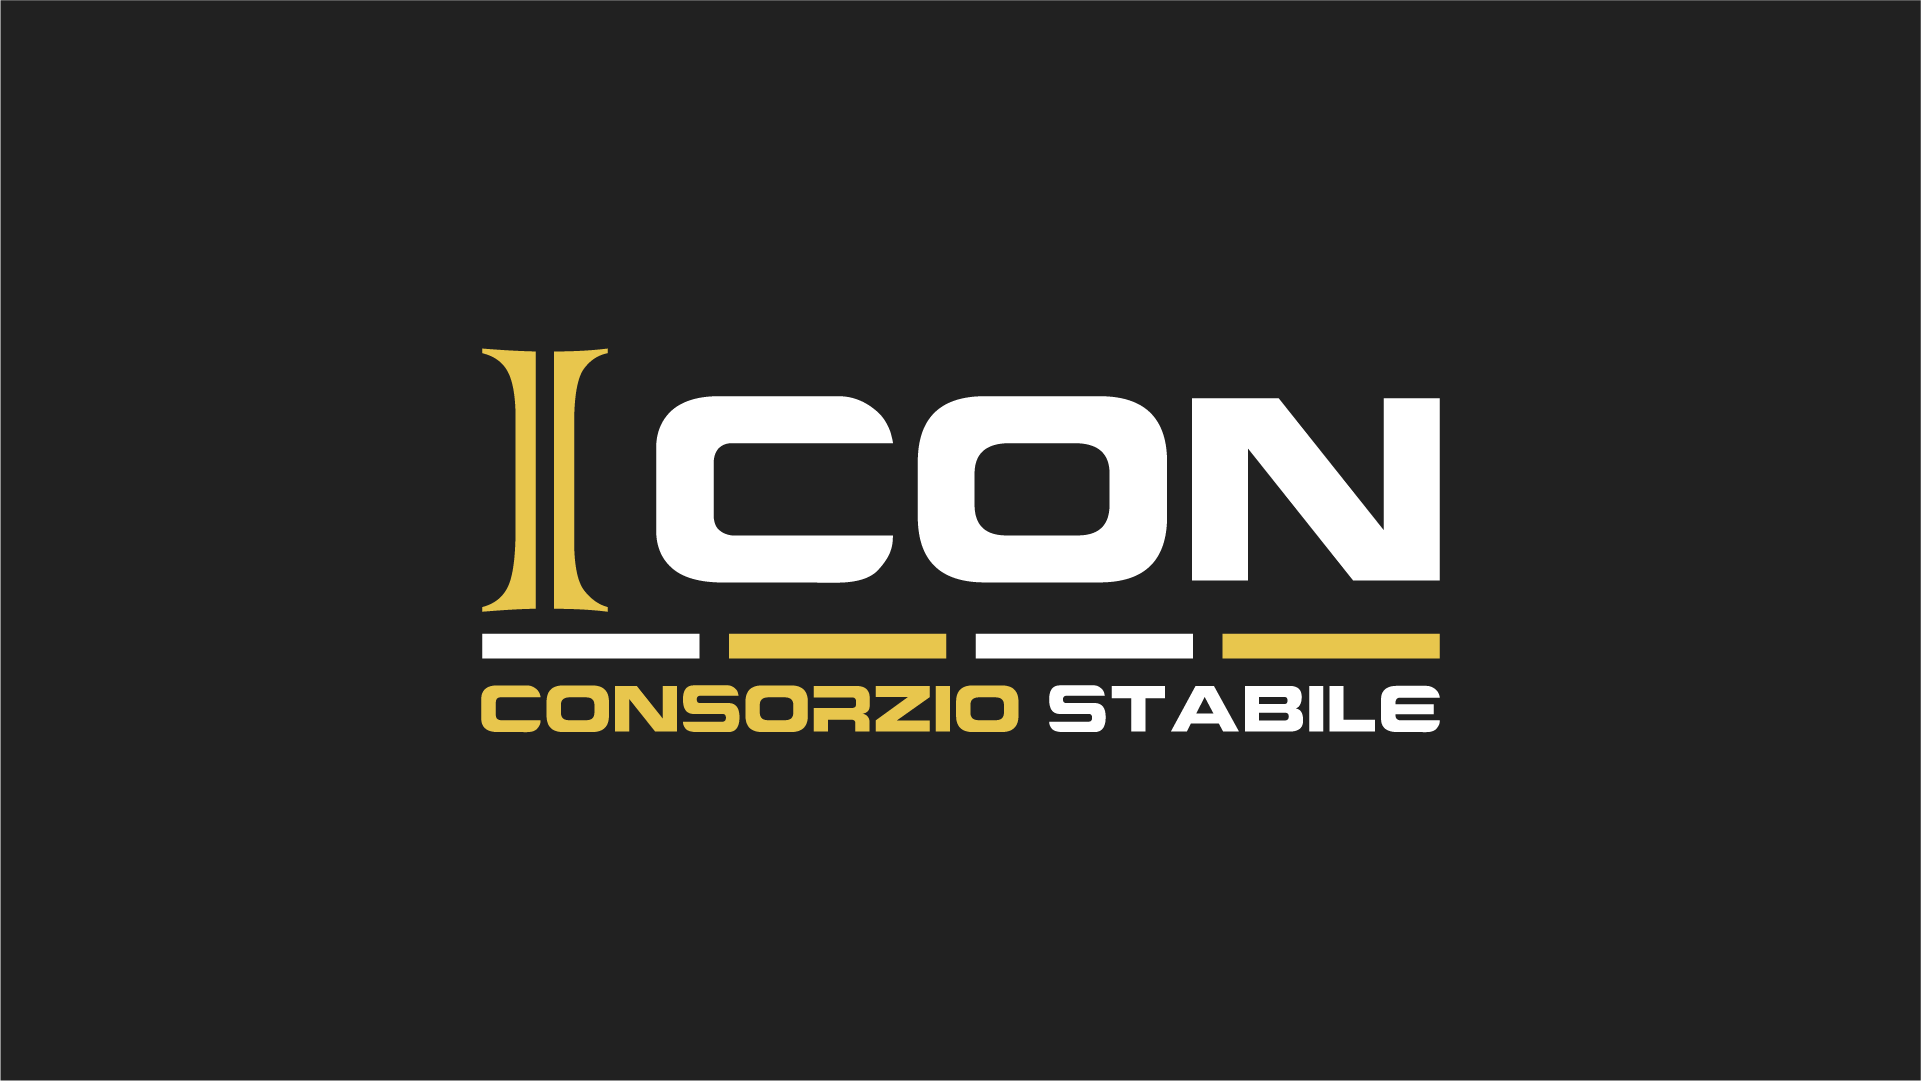 consorzio-icon-portfolio-elevendots